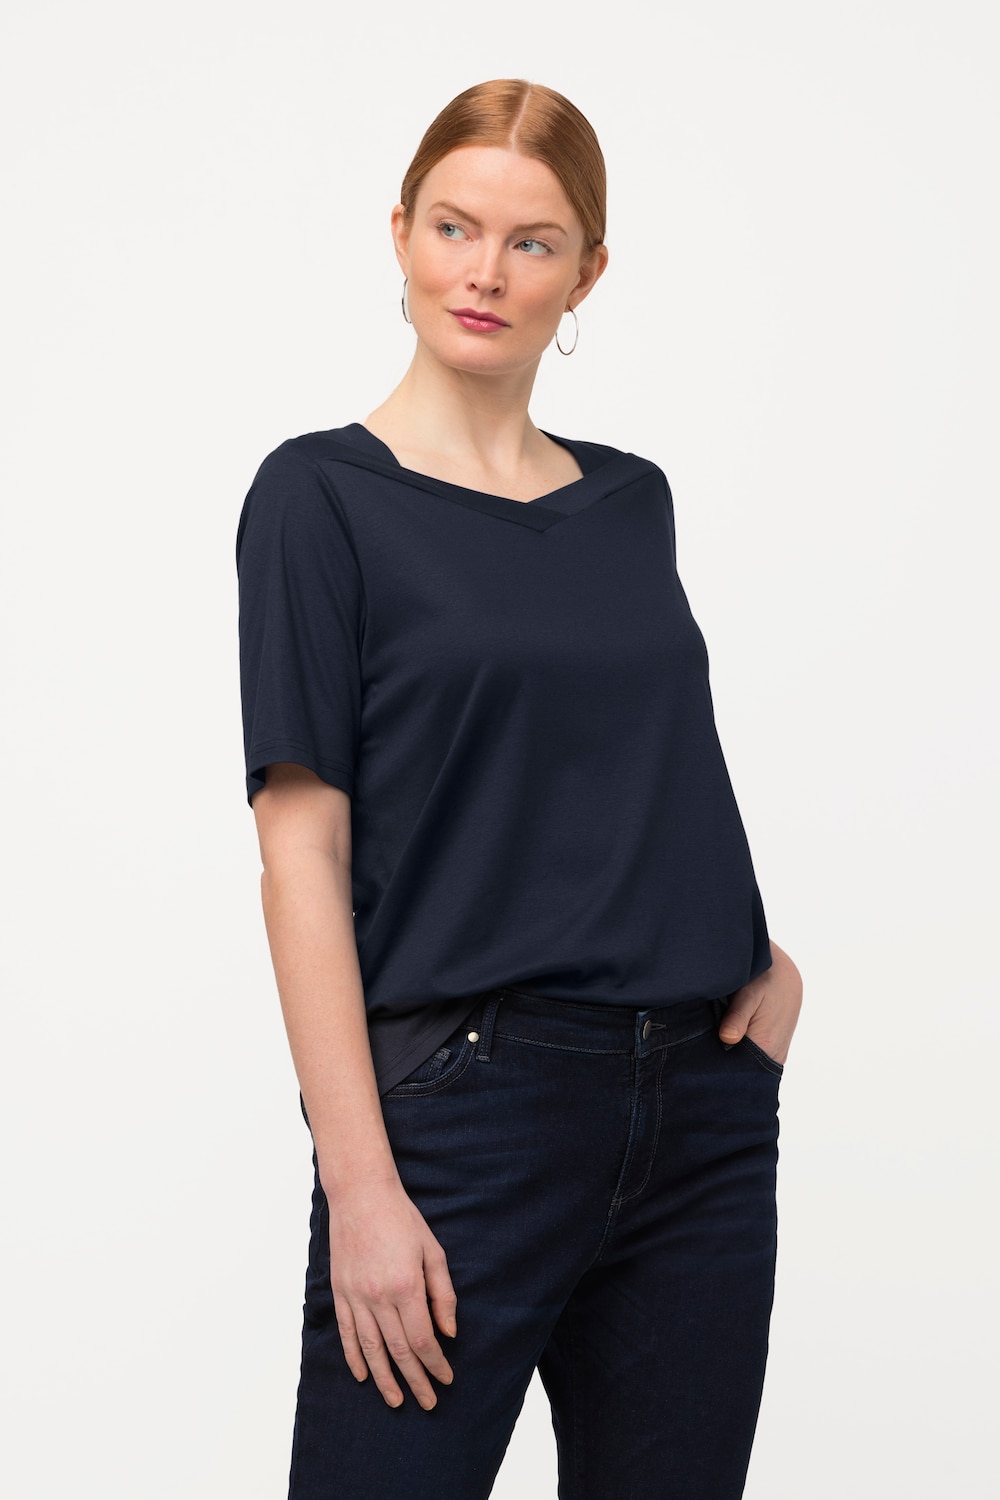 Grote Maten T-shirt, Dames, blauw, Maat: 42/44, Katoen/Synthetische vezels, Ulla Popken